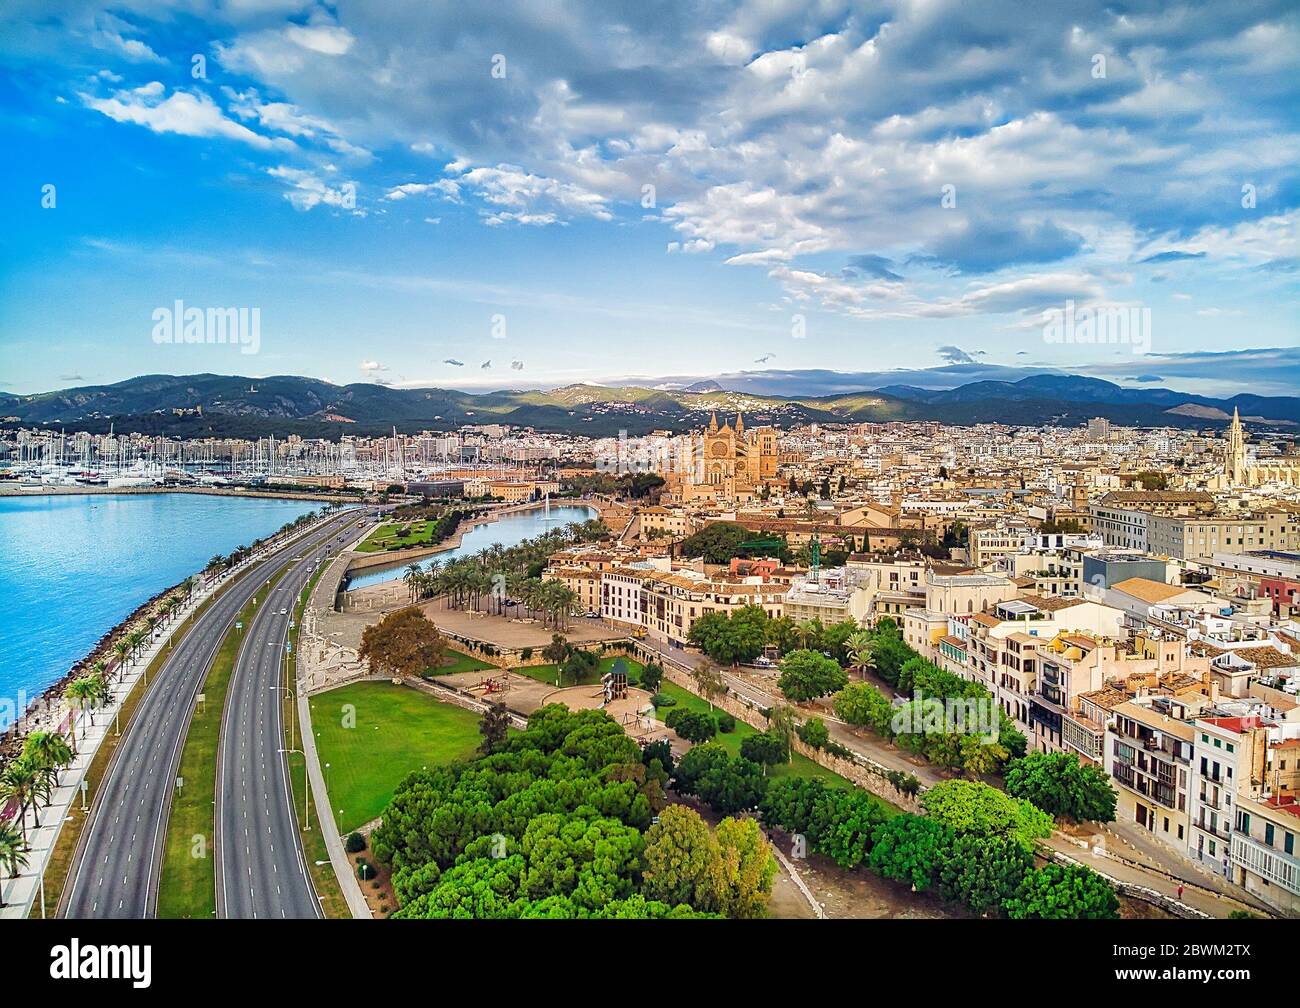 Drone aérien avis Majorque cityscape, route le long de la côte de la  Méditerranée et de la célèbre cathédrale de Palma de Mallorca ou le seu.  Espagne Photo Stock - Alamy